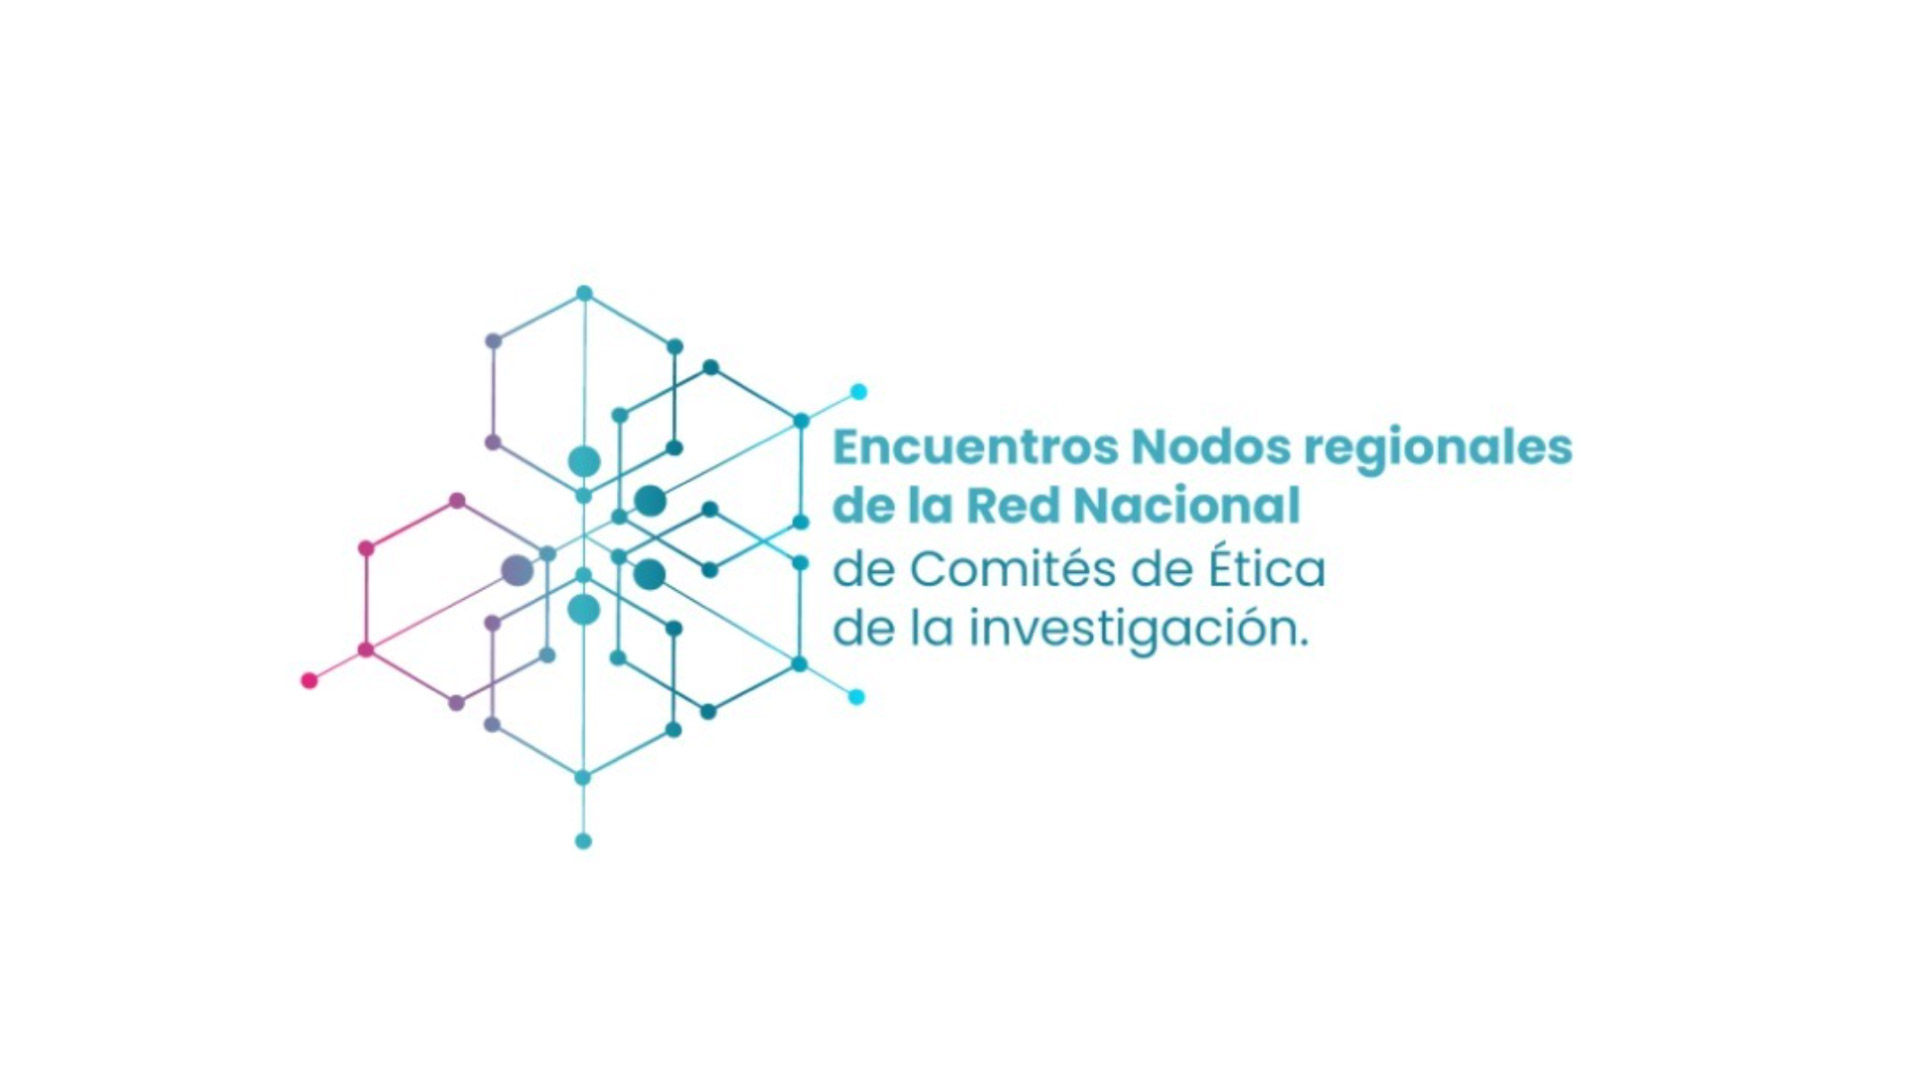 El Encuentro de Nodos Regionales del Eje Cafetero de la Red Nacional de Comités de Ética de la Investigación se realizará en la Uniquindío